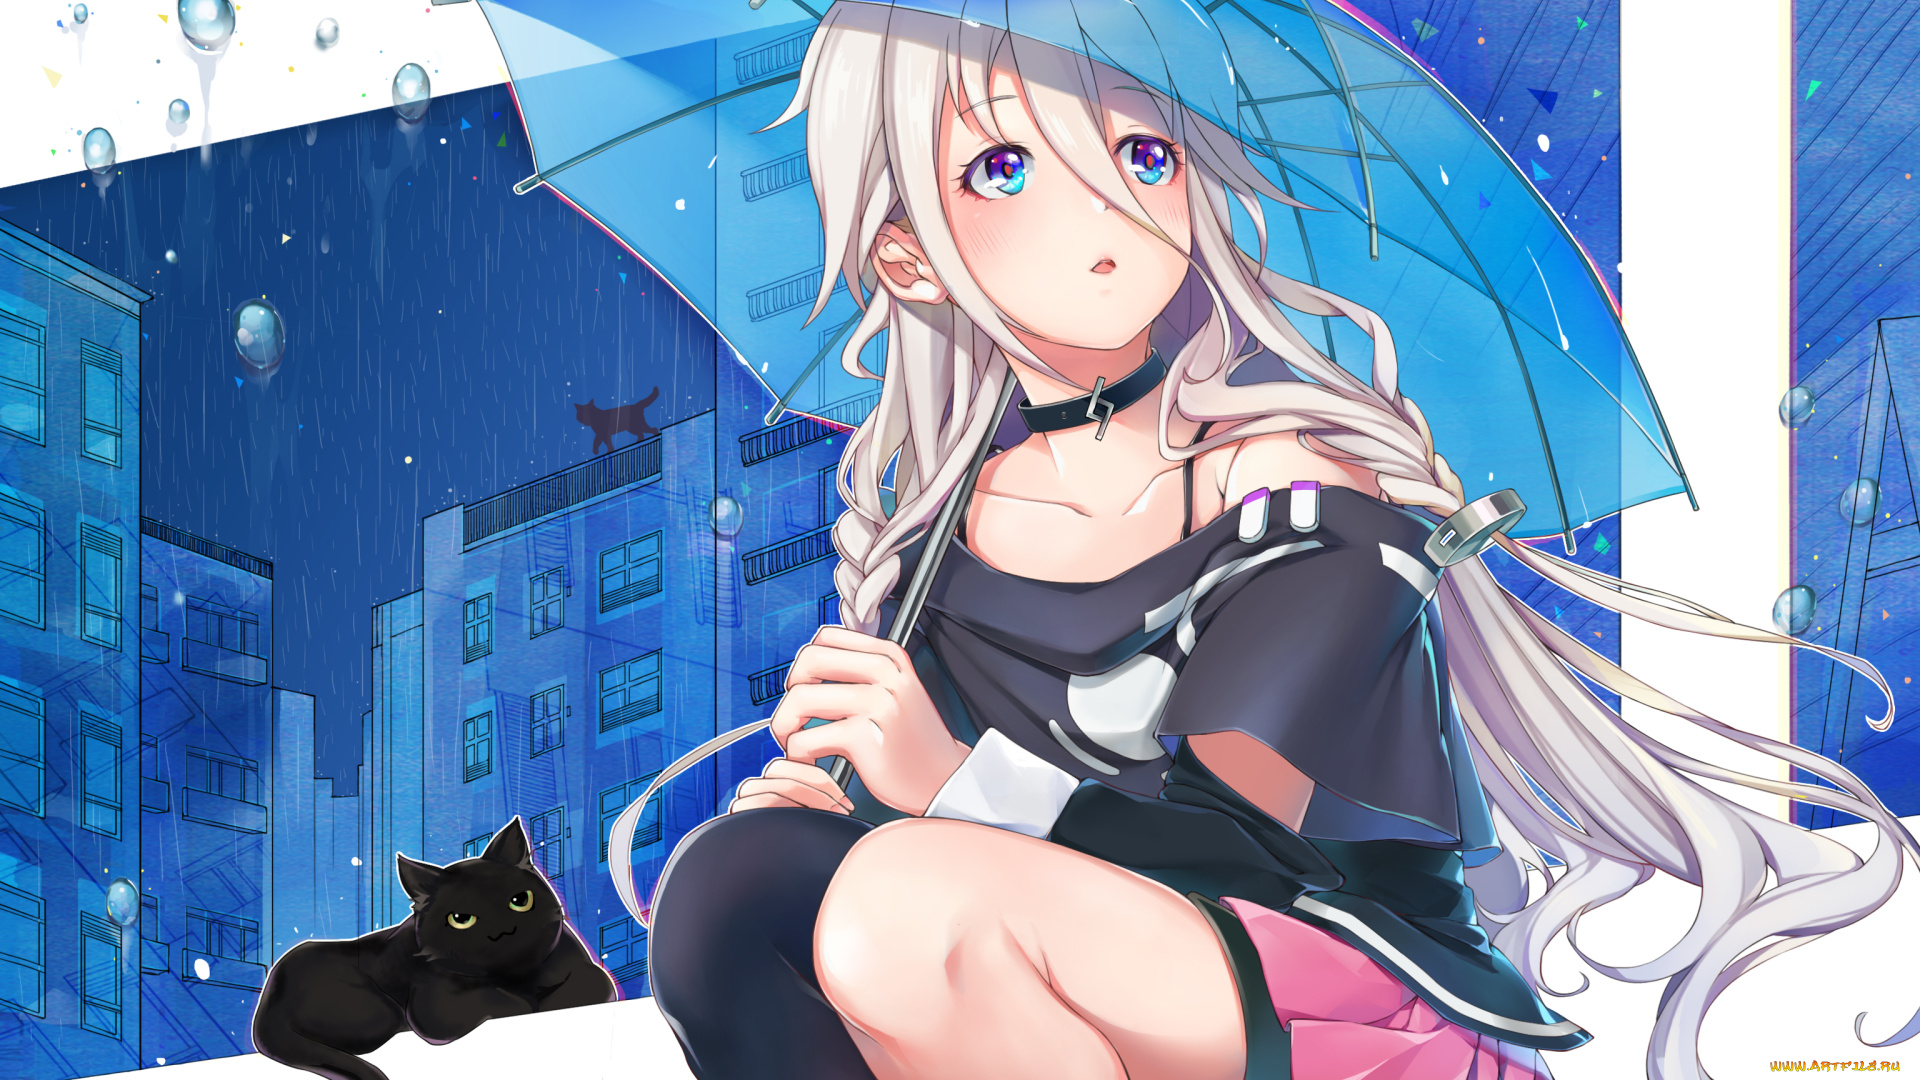 аниме, vocaloid, ночь, дождь, megumoke, зонт, коты, город, капли, ia, арт, девушка